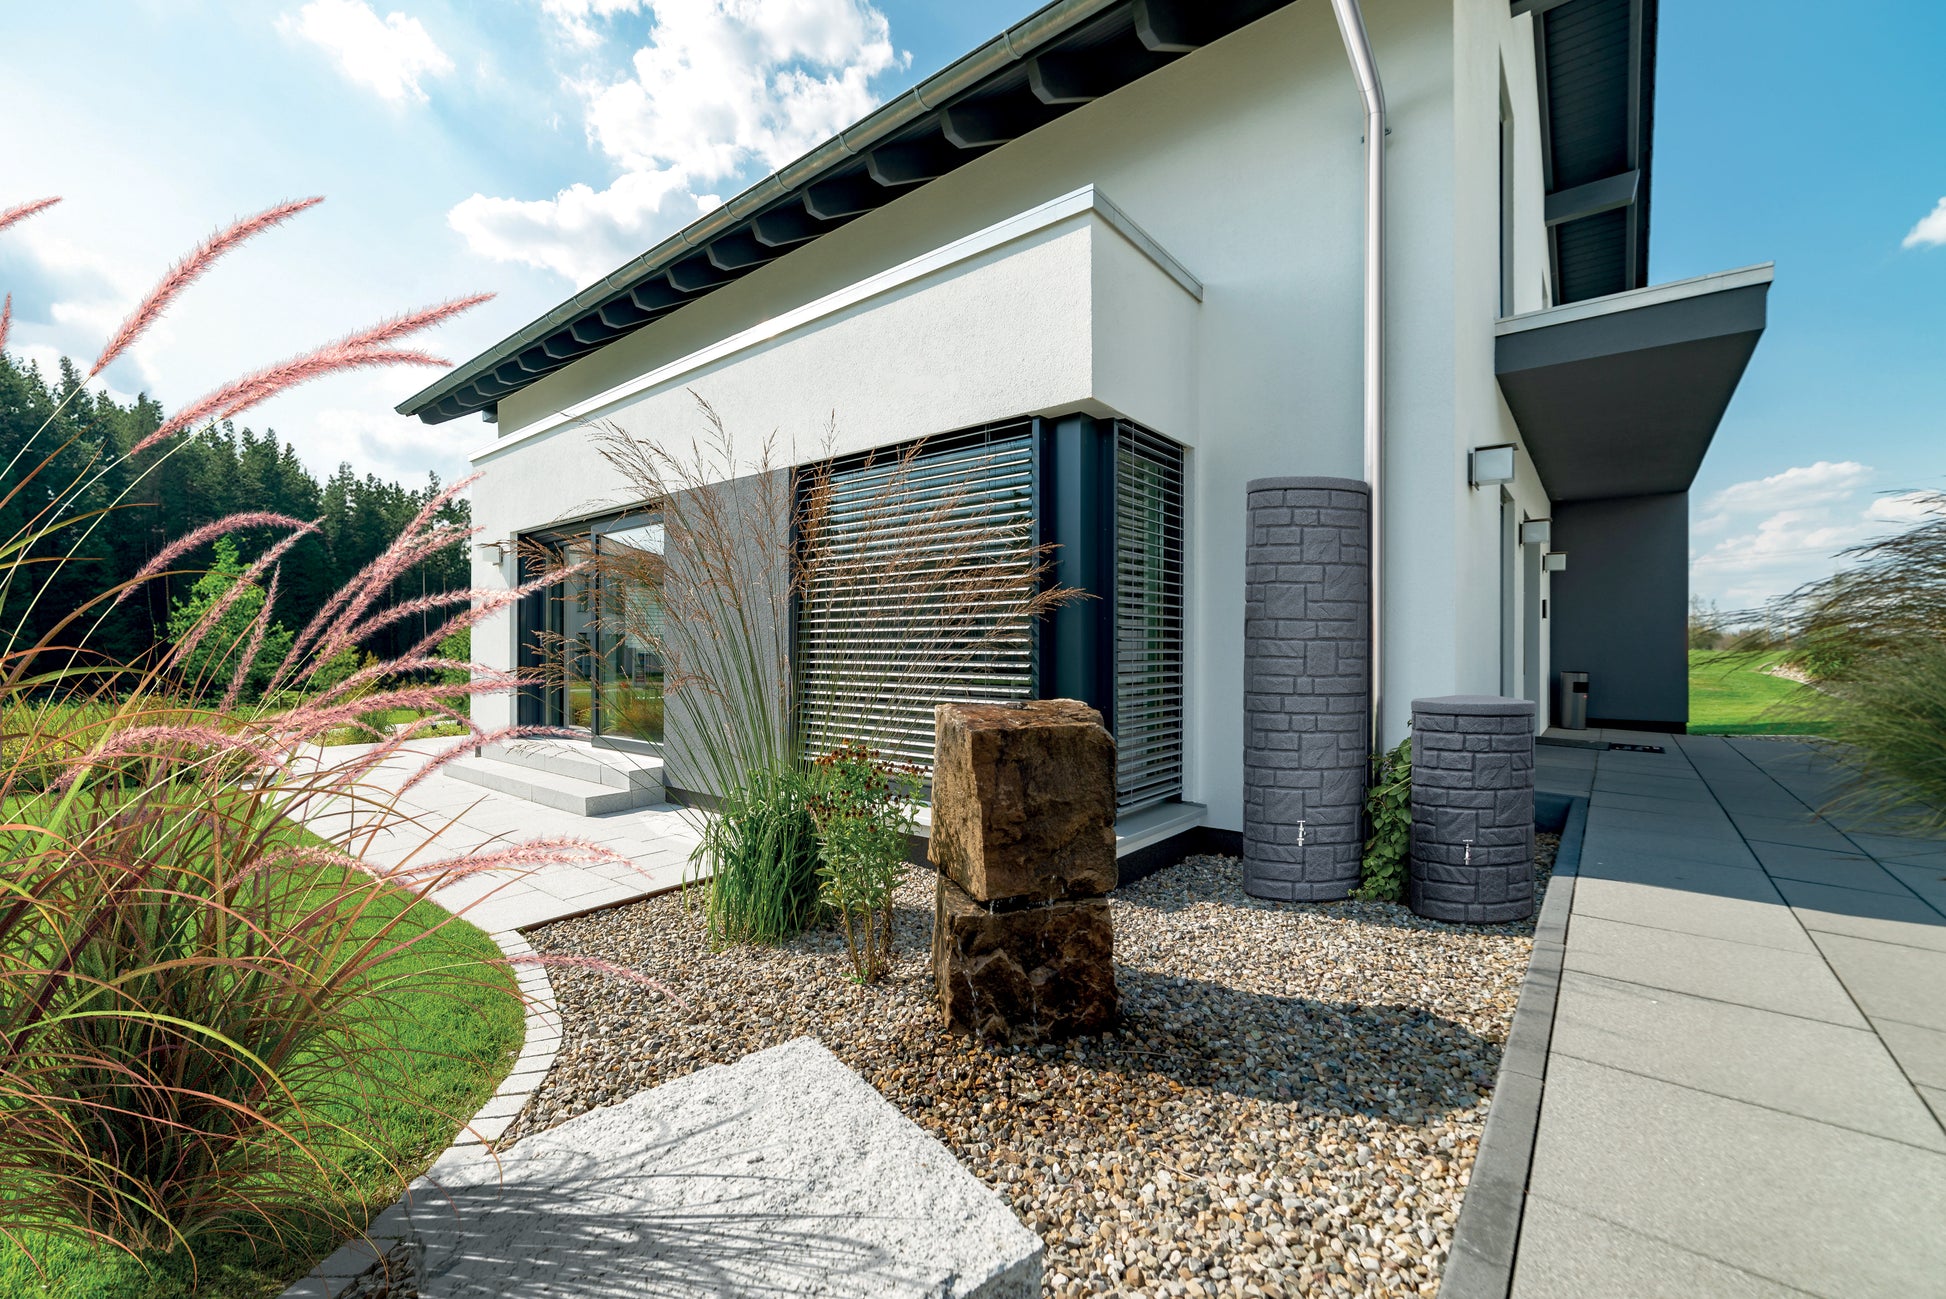 Moderne Hausfassade mit angelegtem Garten, Zierkies und einer YourCasa Regentonne [StoneRain] – frostsicher & UV-beständig.